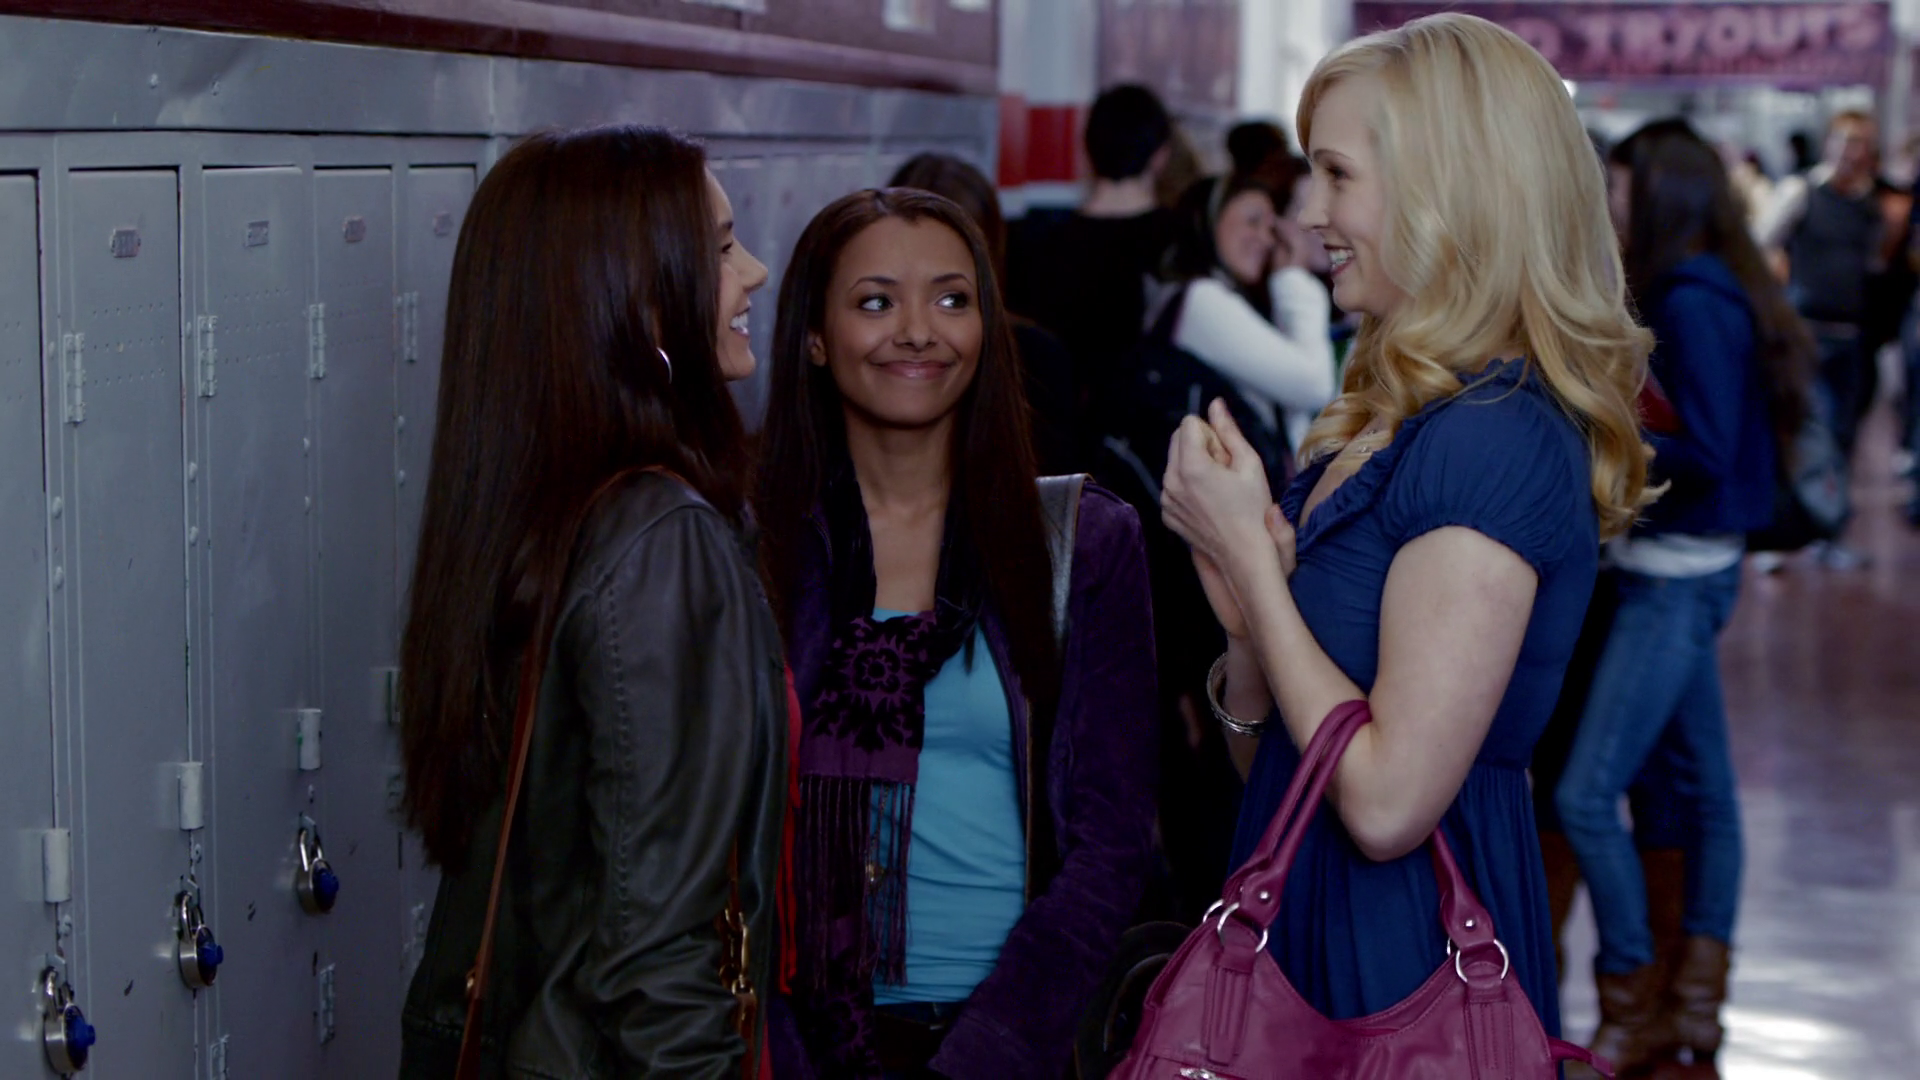 Elena, Bonnie e Caroline conversando na escola em The Vampire Diaries